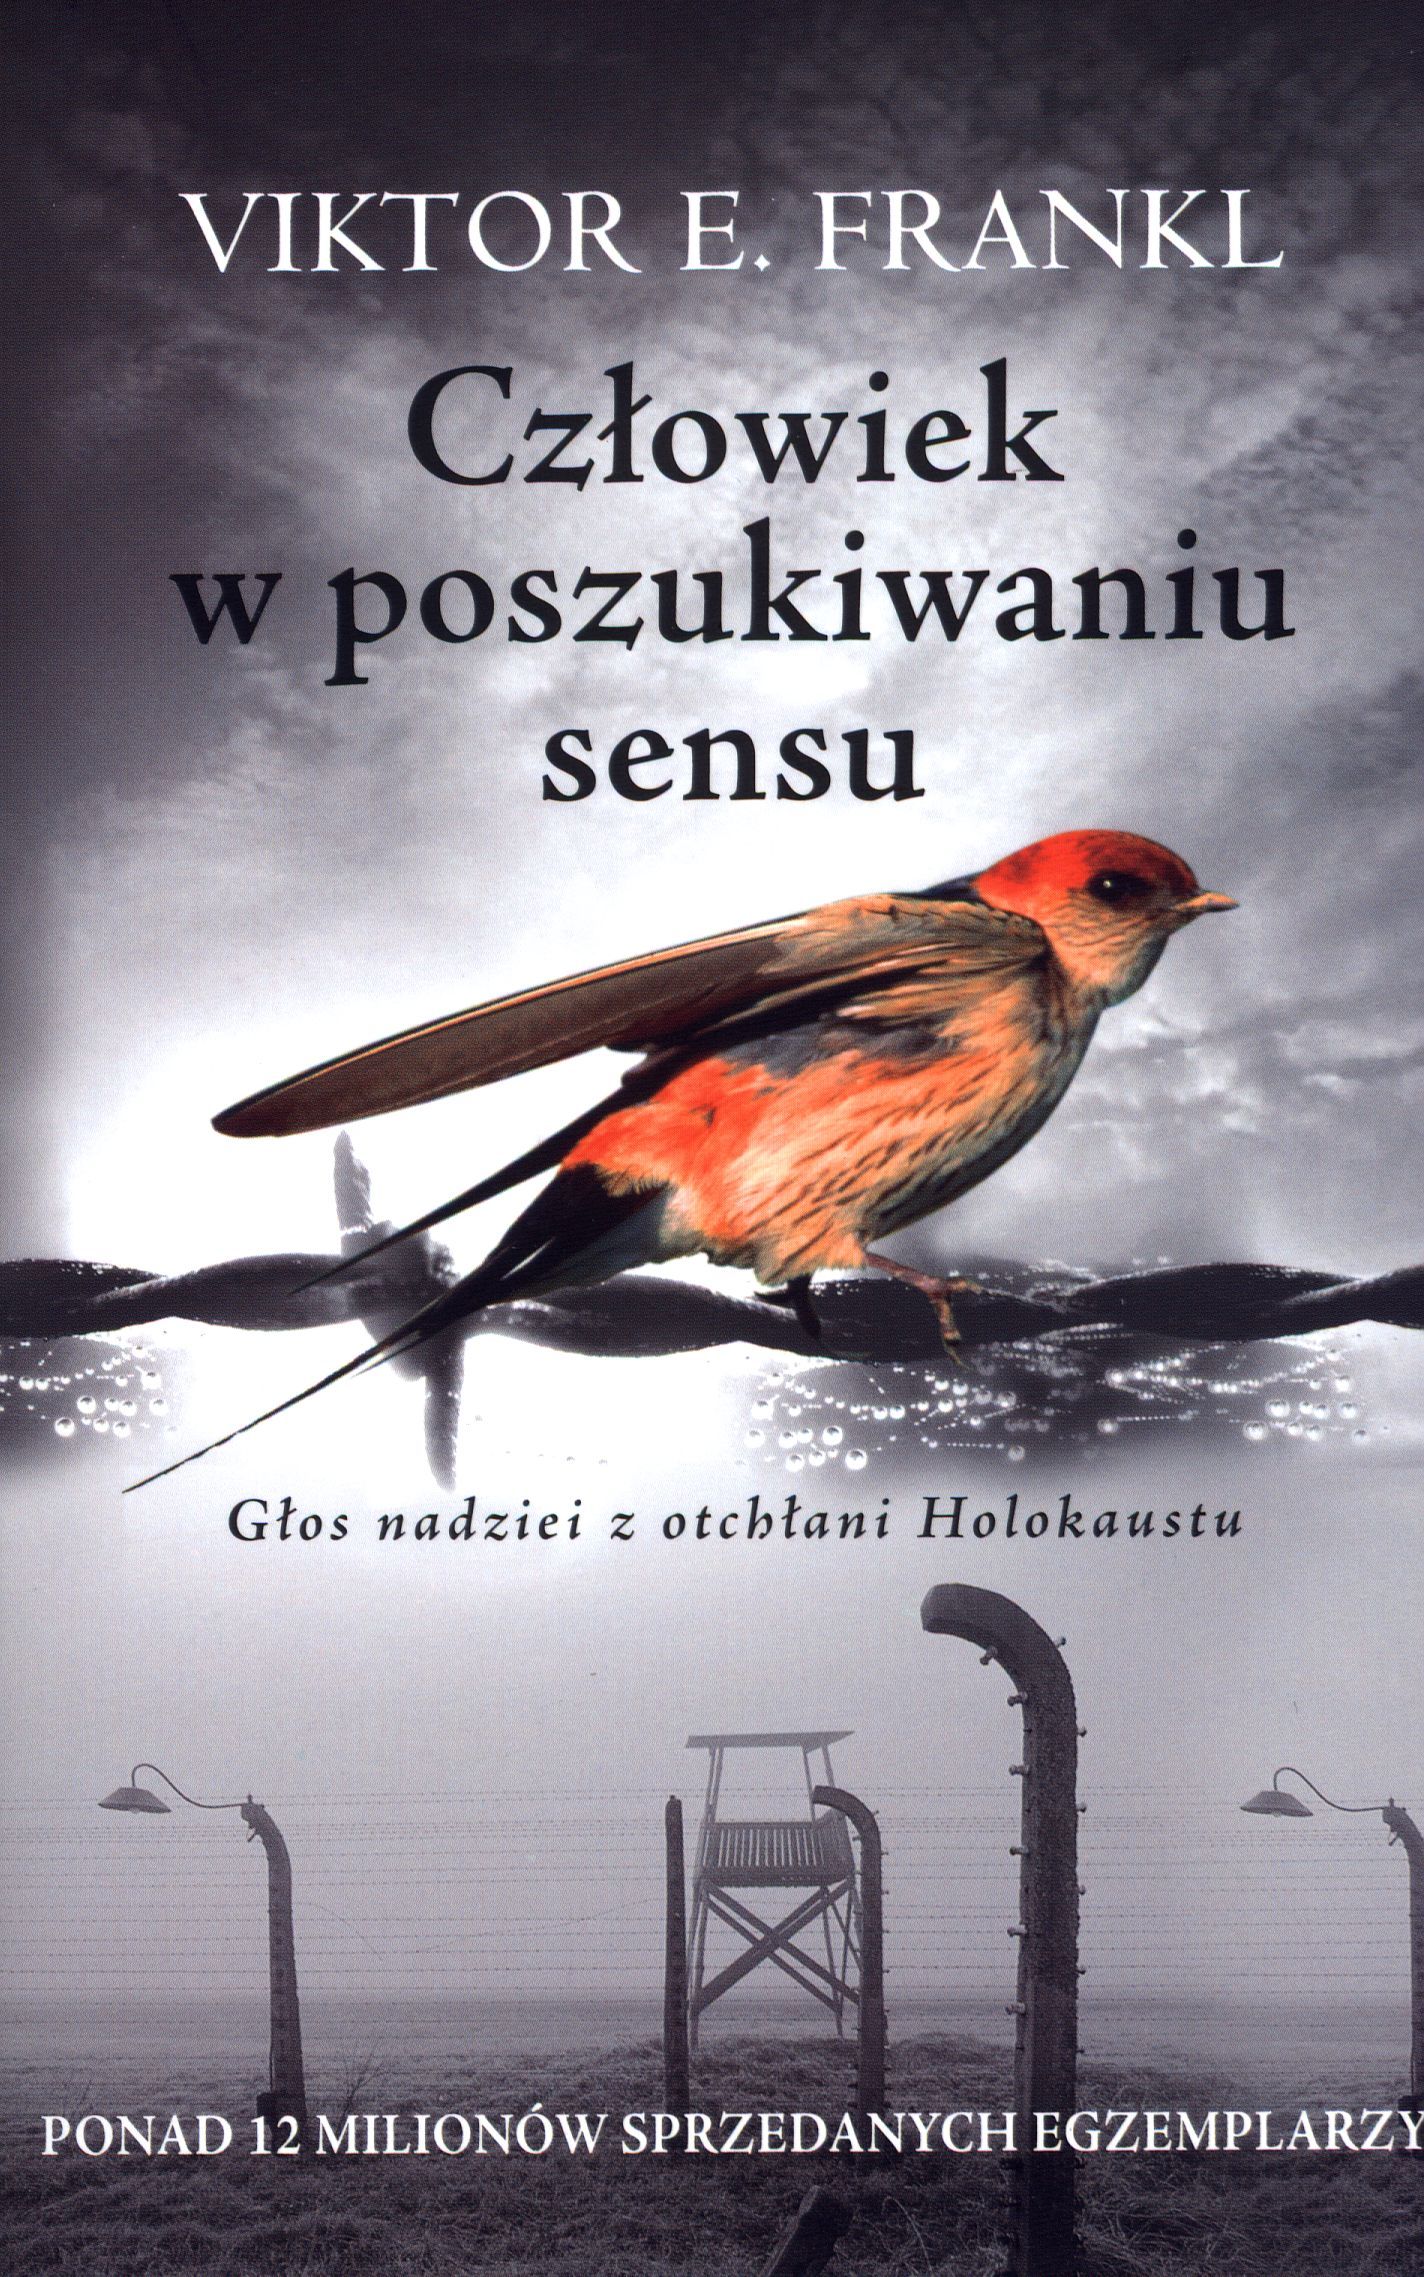 Okładka książki - czerwony ptak siedzący na drucie kolczastym obozu koncentracyjnego